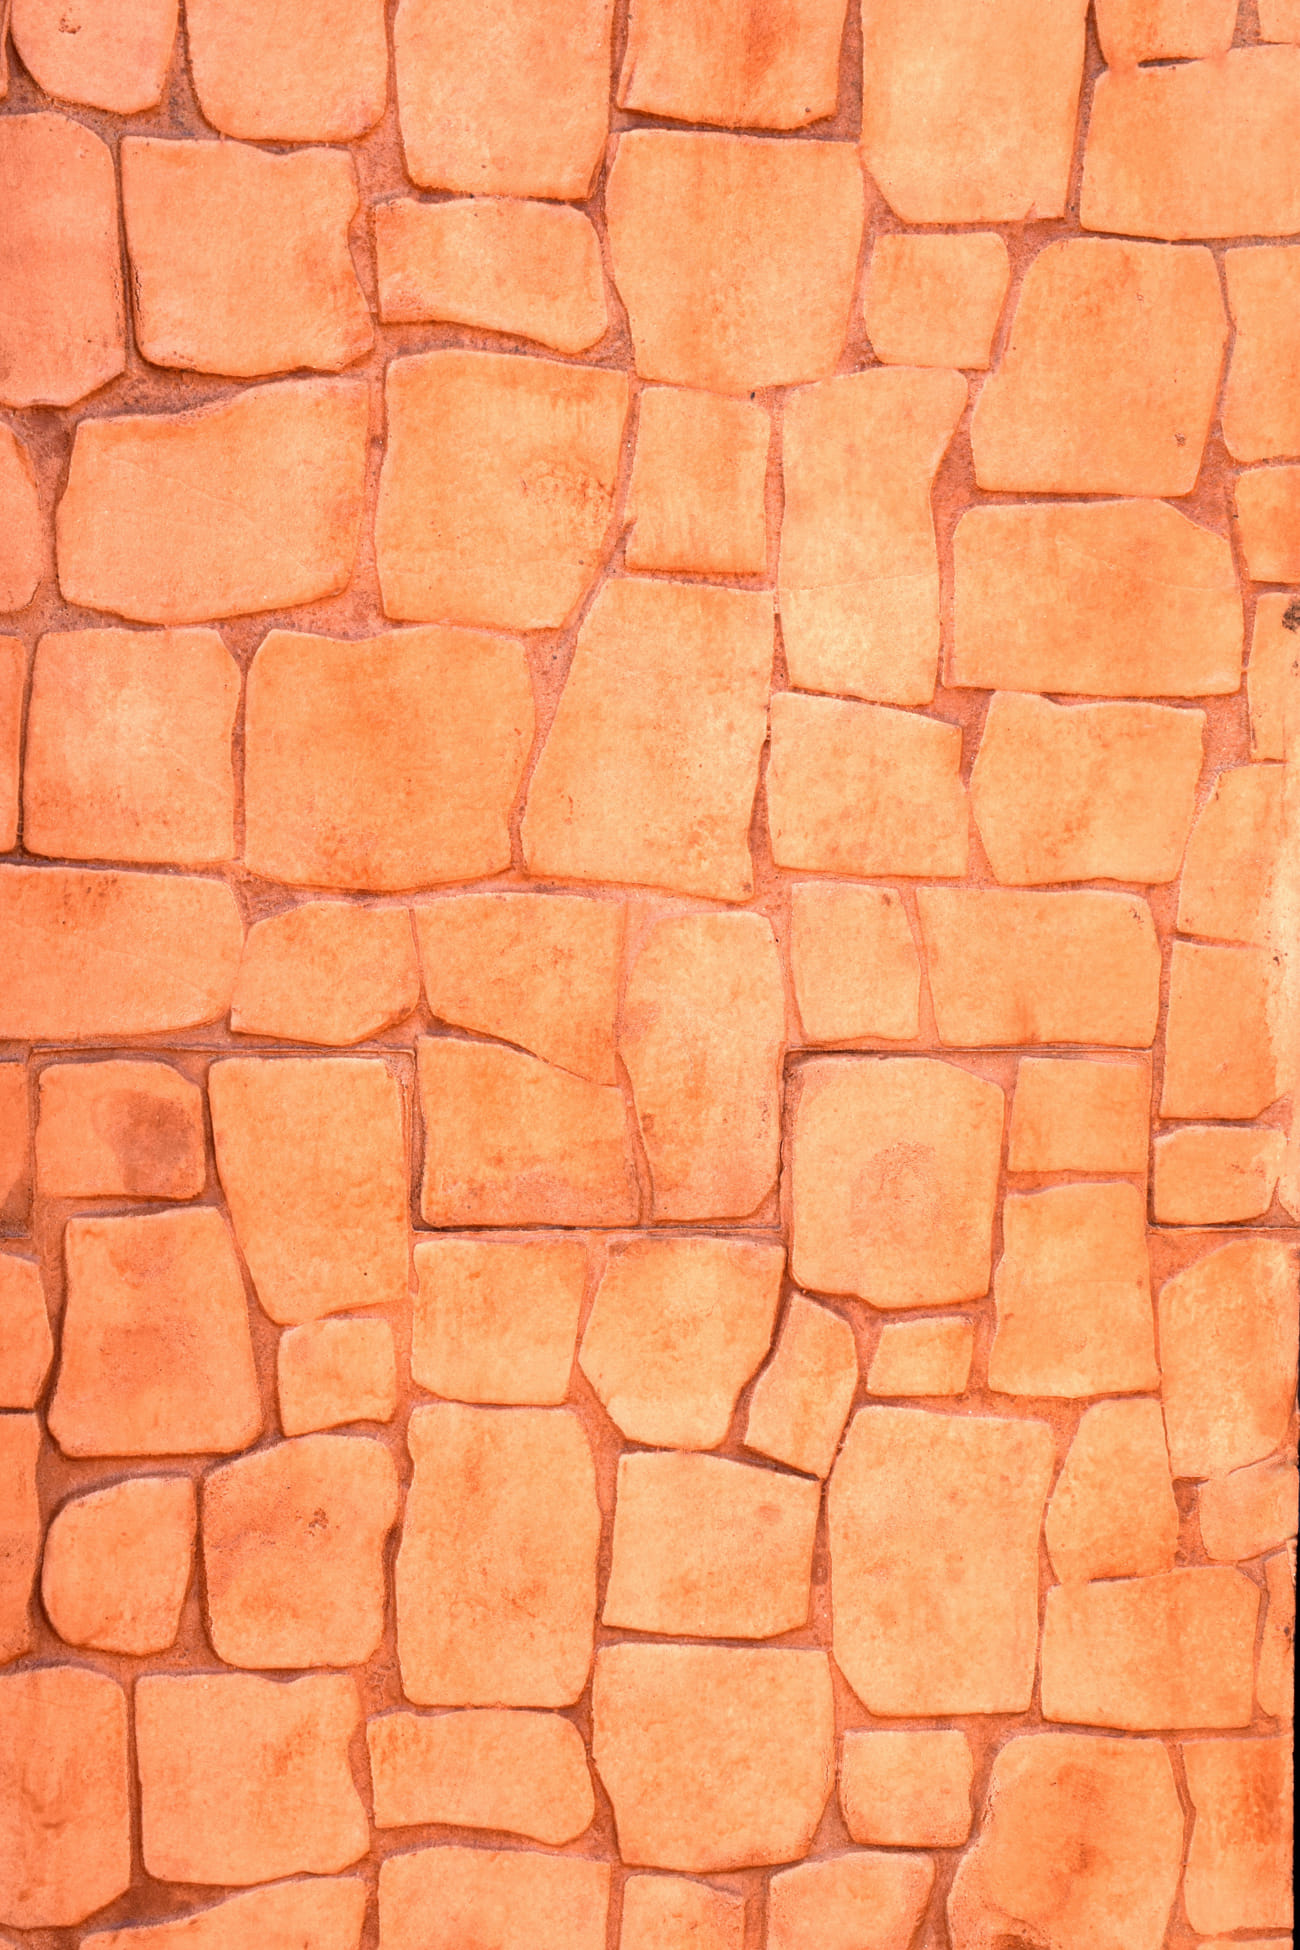 Pystyyn painettu betoni kiviefektillä oranssi väri